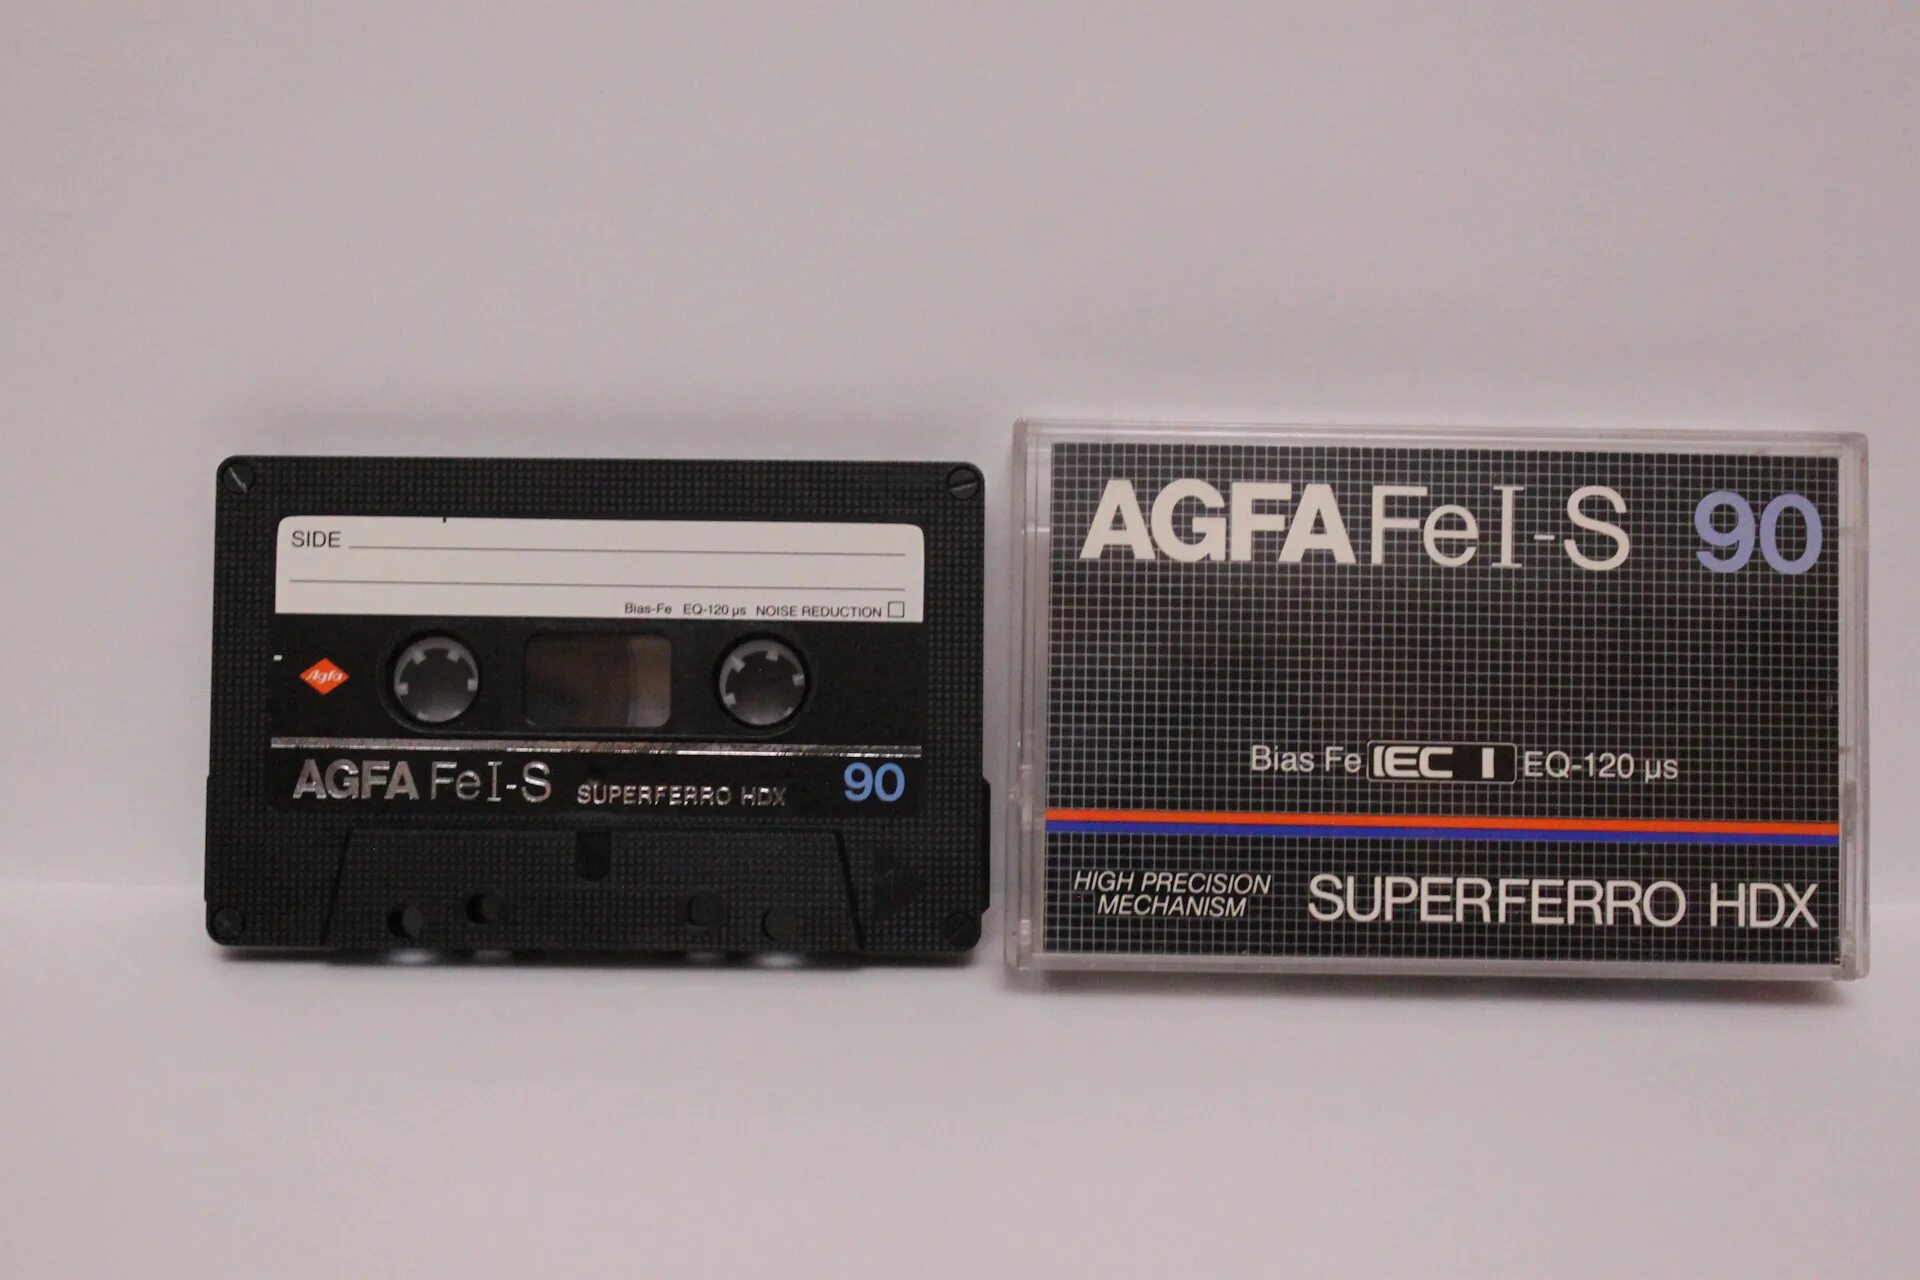 Радио забытая кассета. Кассета для магнитофона Agfa Superferro. Аудиокассета Agfa Fe i. Кассеты 80-х годов Agfa. Hdx кассеты для магнитофона.